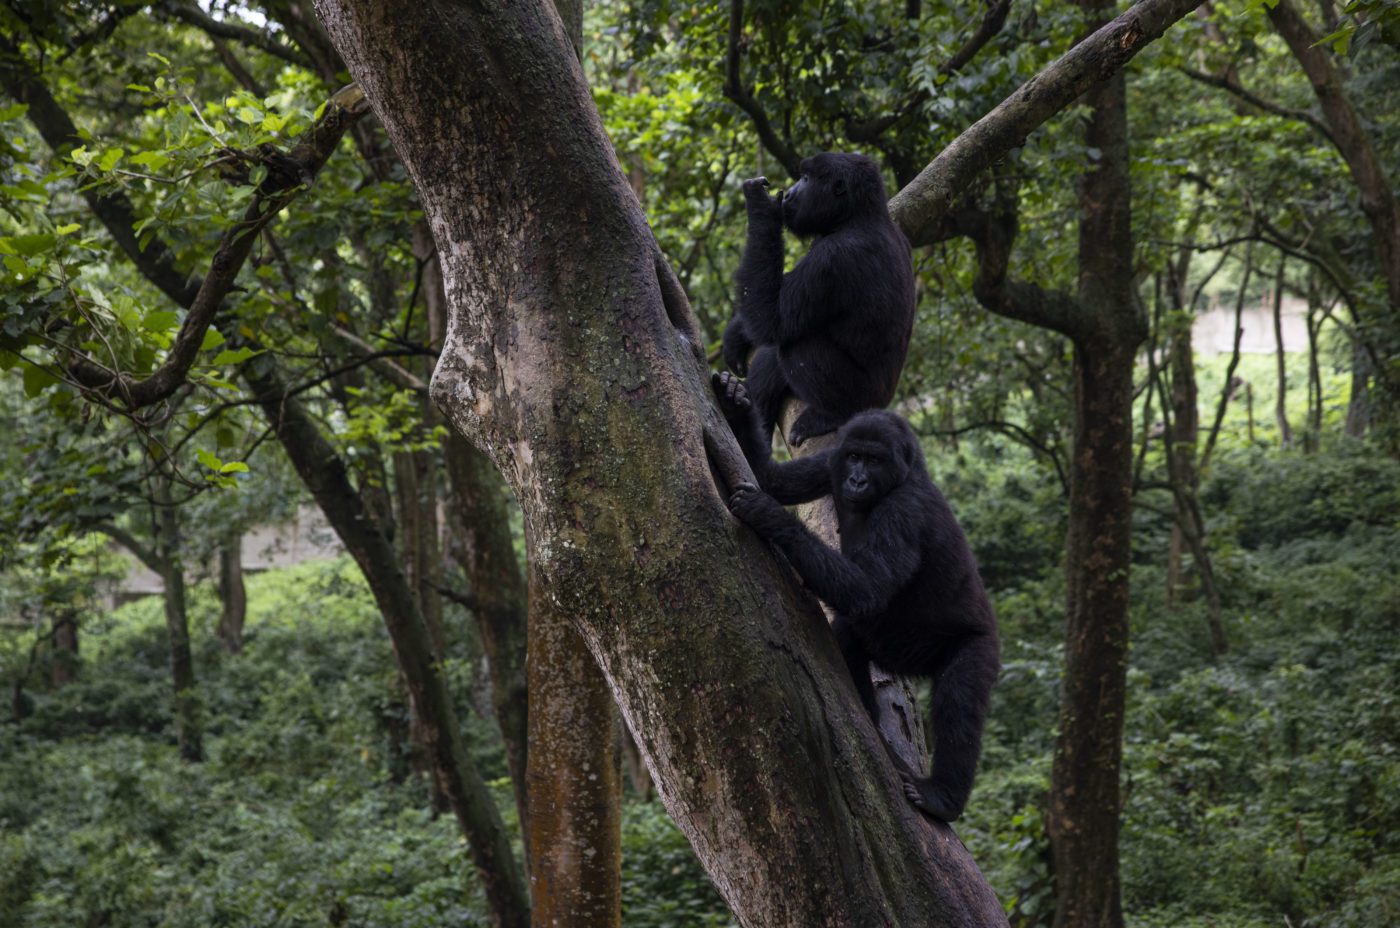 An image of an orphaned mountain gorillas